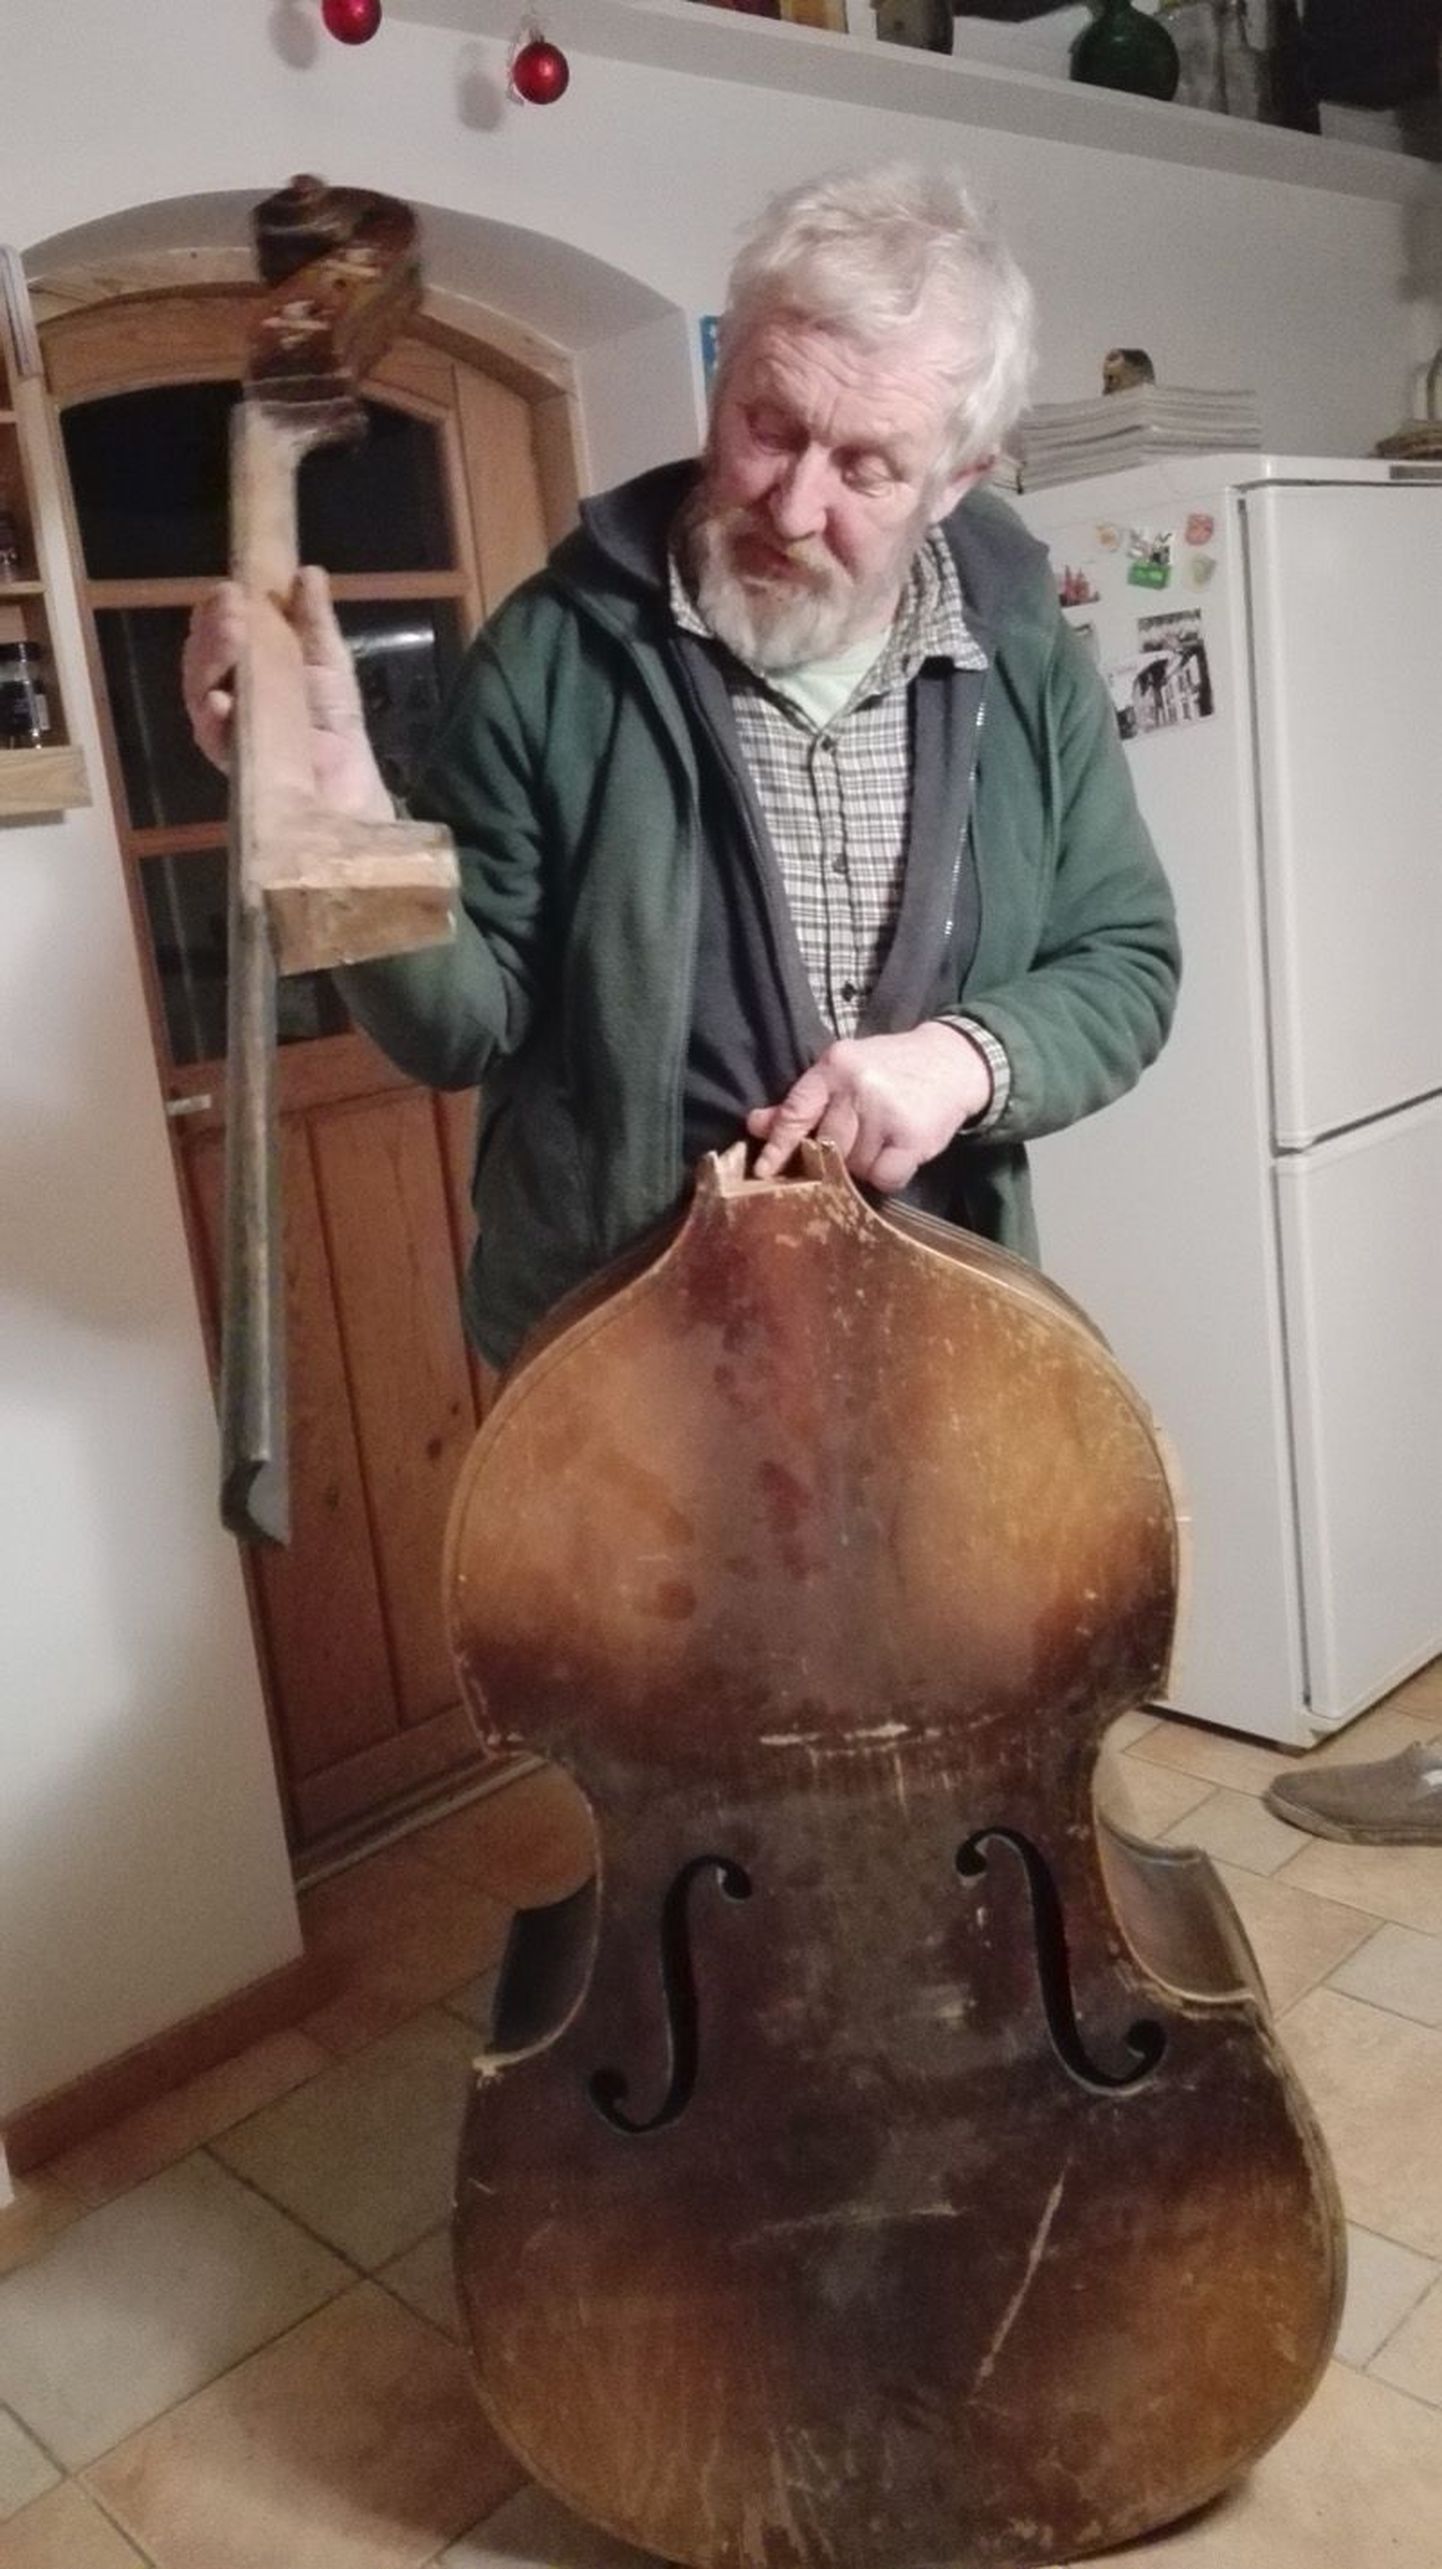 Palmse mees Rein Tauts võttis kontrabassi oma hoole alla ja püüab selle uuesti mängima saada.